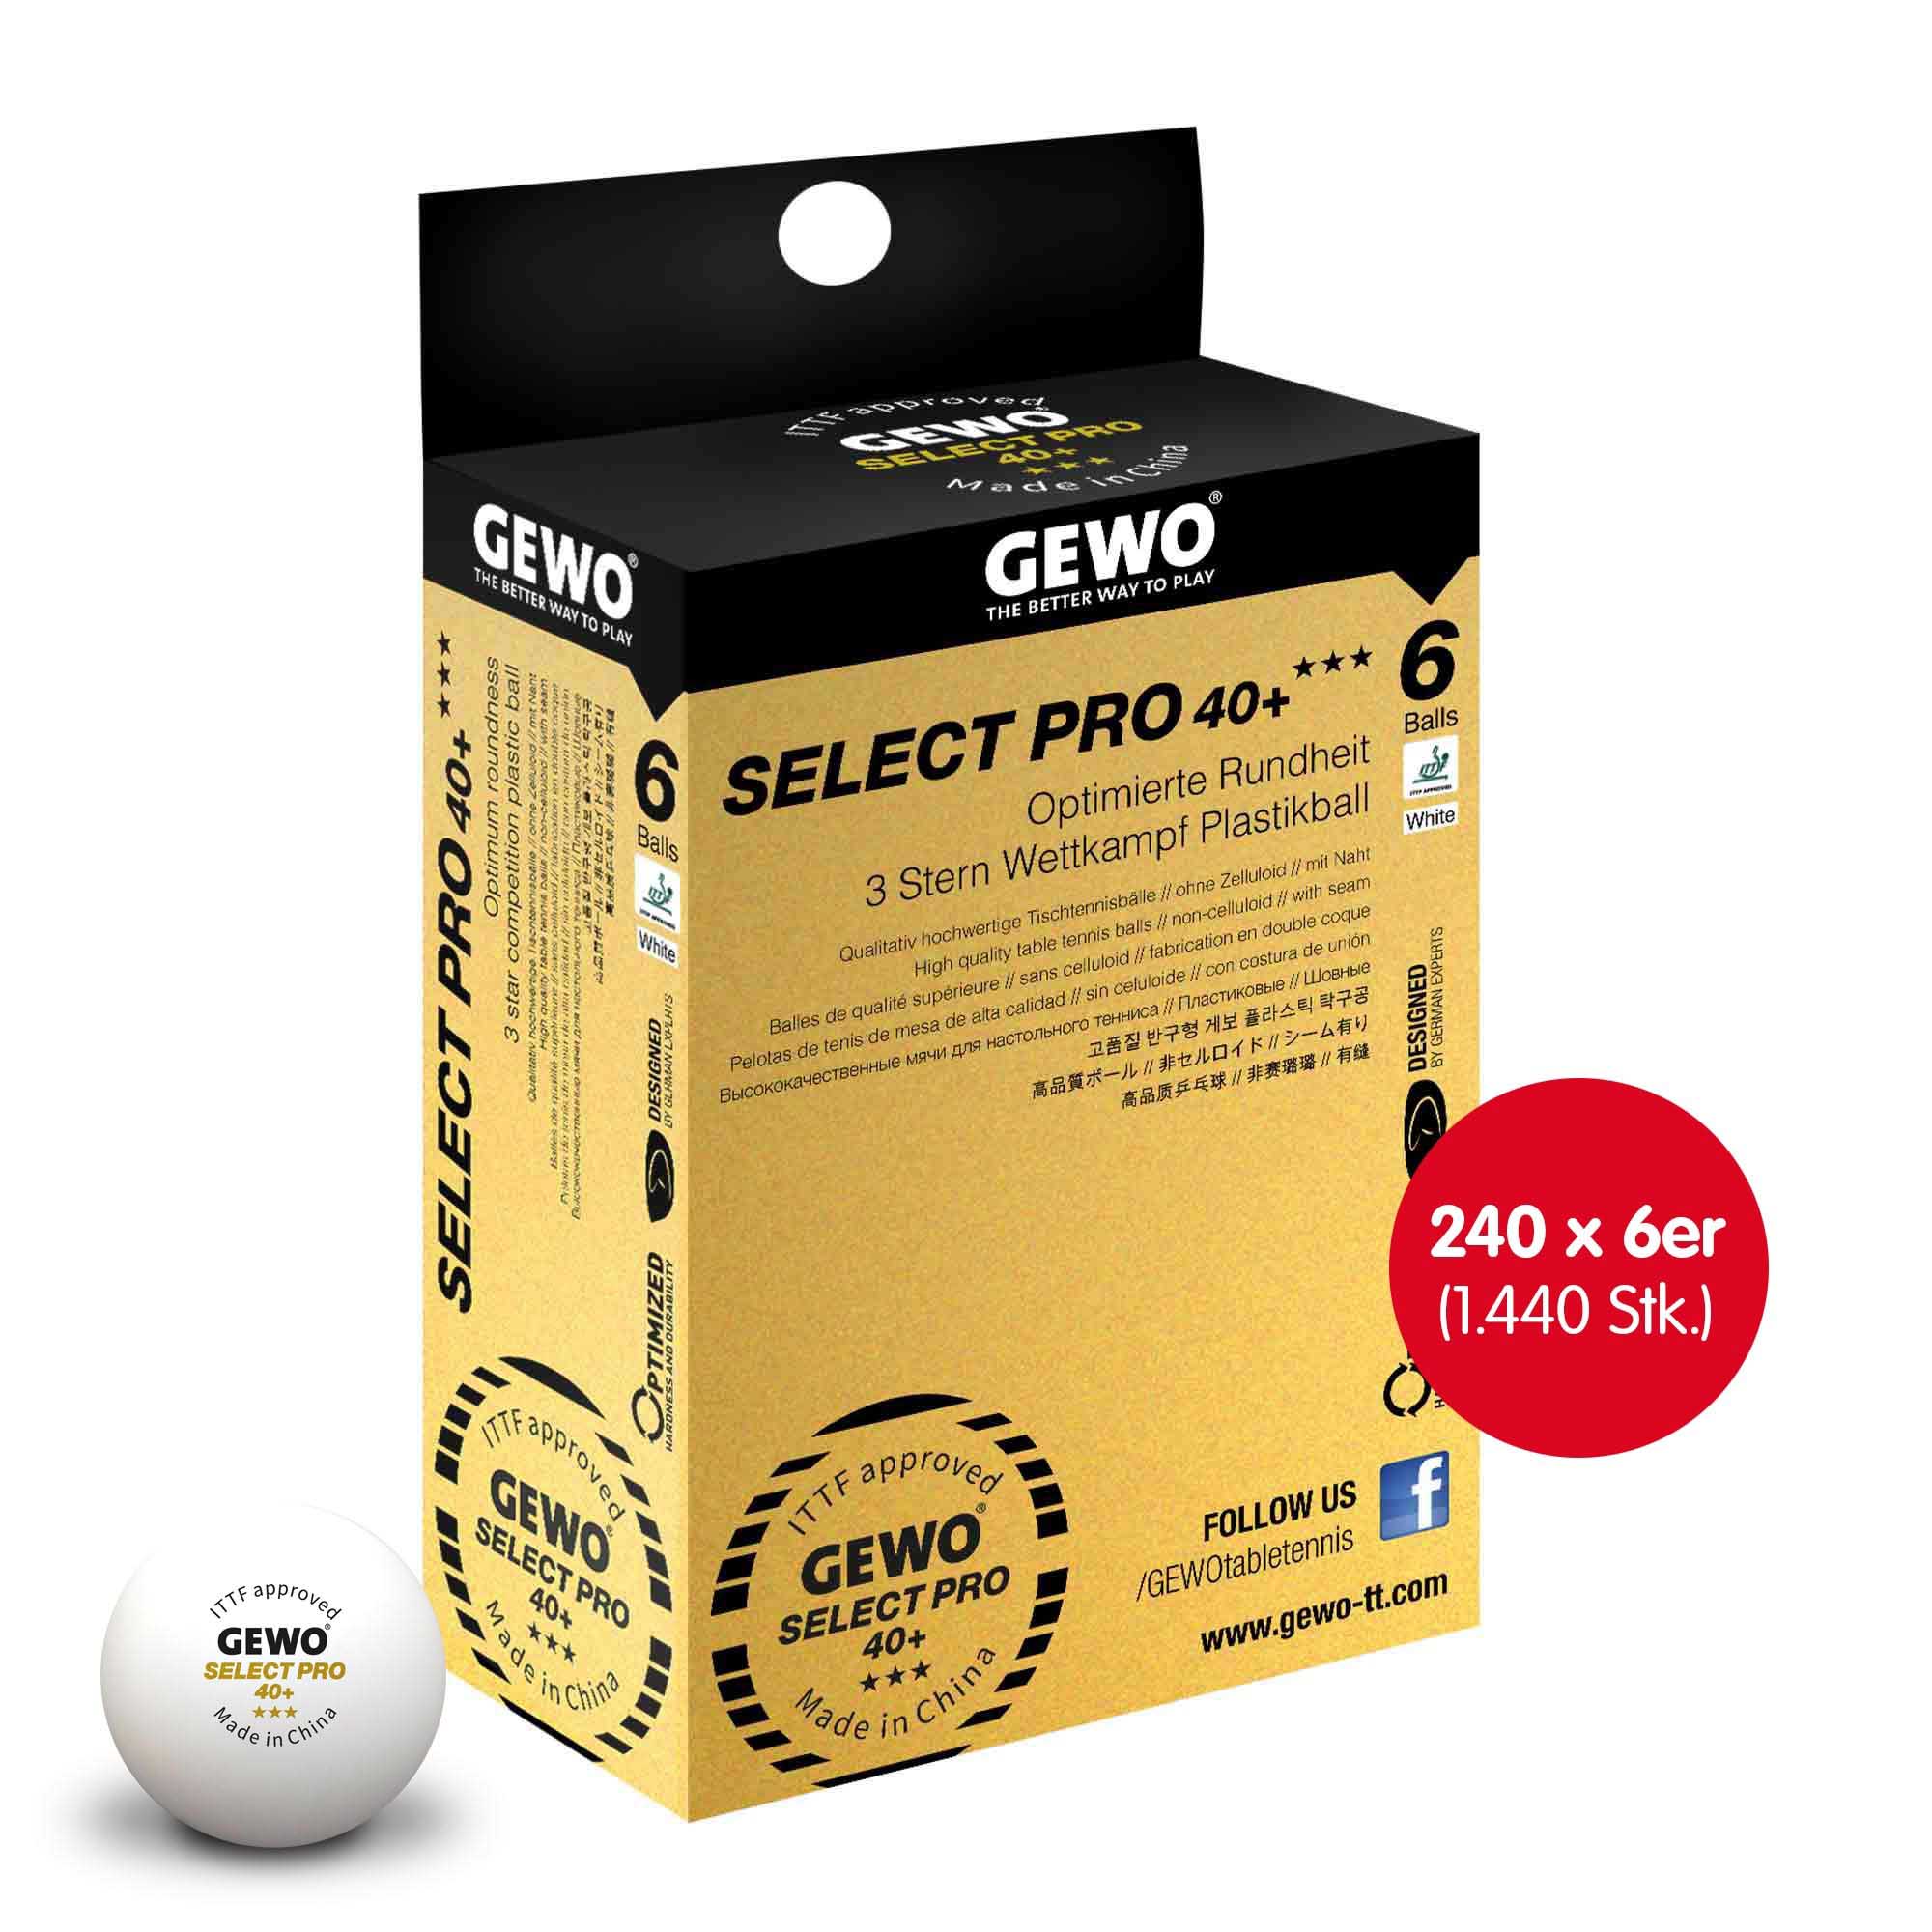 GEWO Select Pro 40+ *** 240x 6er Schachtel weiß